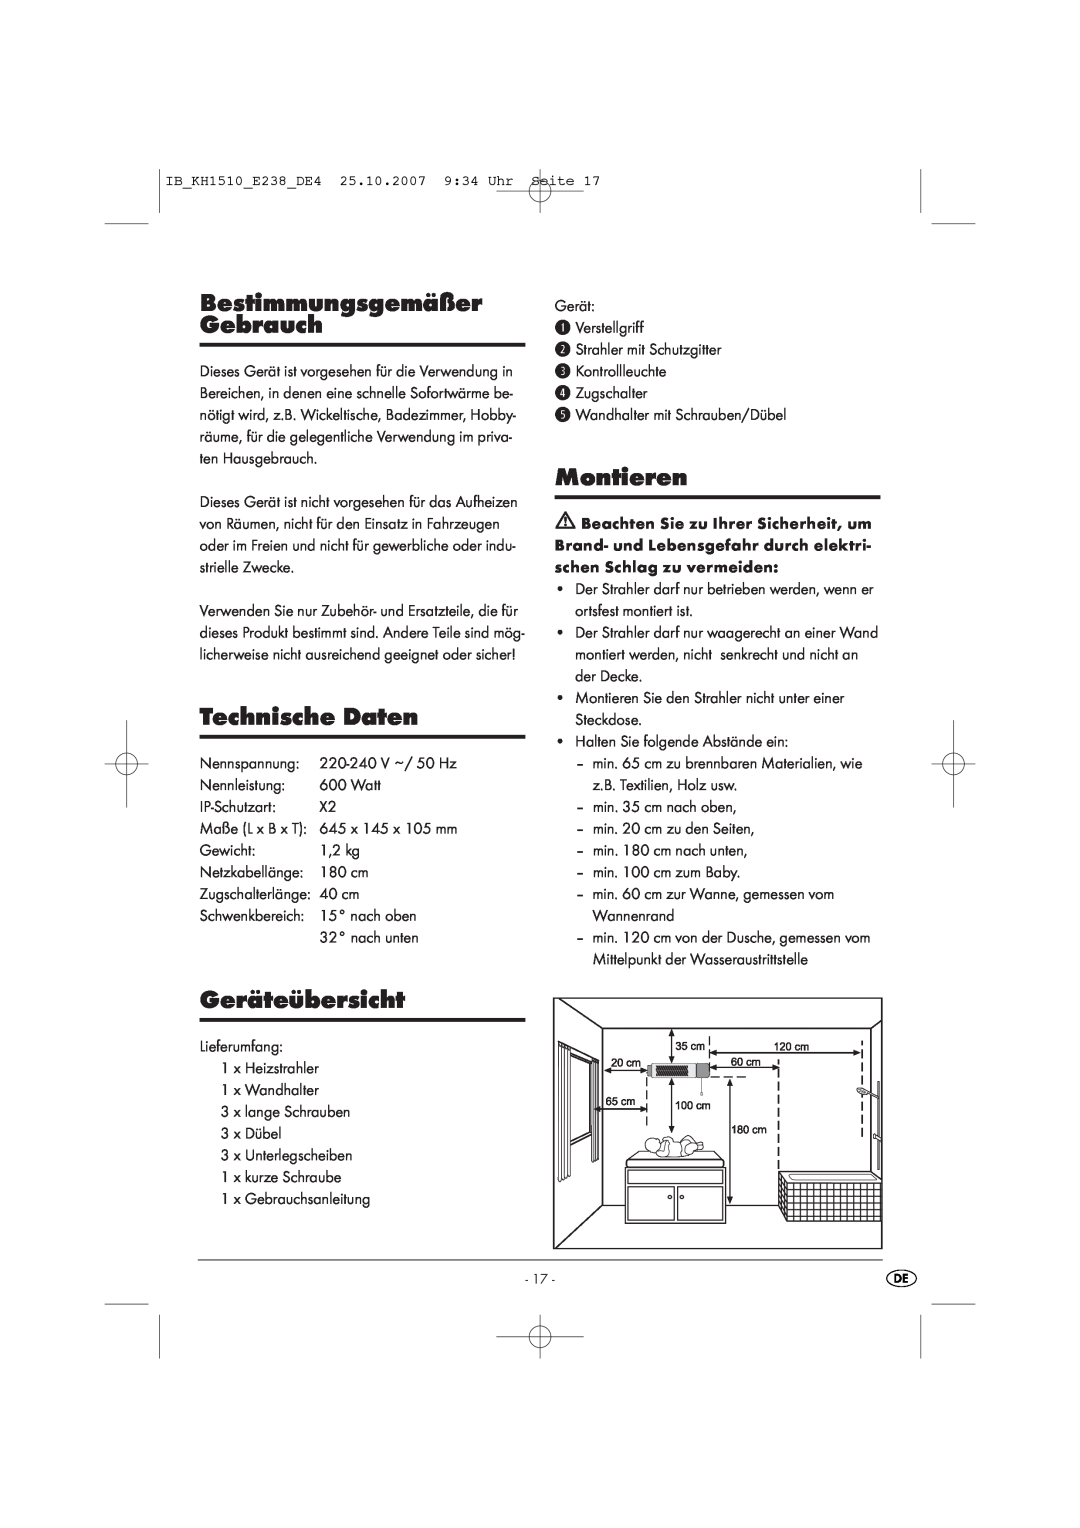 Kompernass KH 1510 manual Bestimmungsgemäßer Gebrauch, Technische Daten, Montieren, Geräteübersicht 